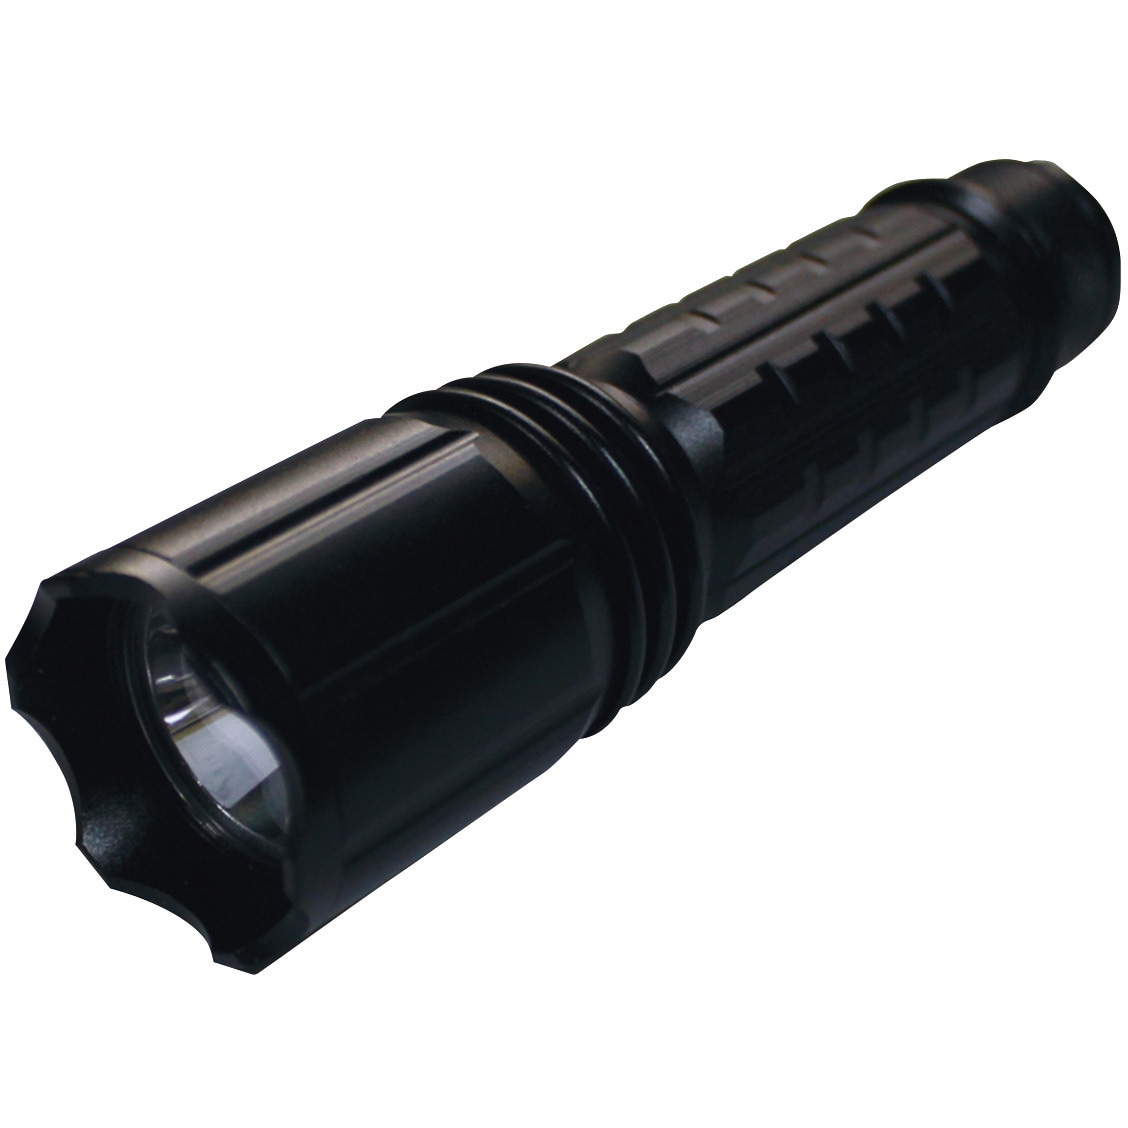 UV-SU385-01W Hydrangea ブラックライト 高出力(ワイド照射) 乾電池タイプ 1個 Hydrangea  【通販サイトMonotaRO】